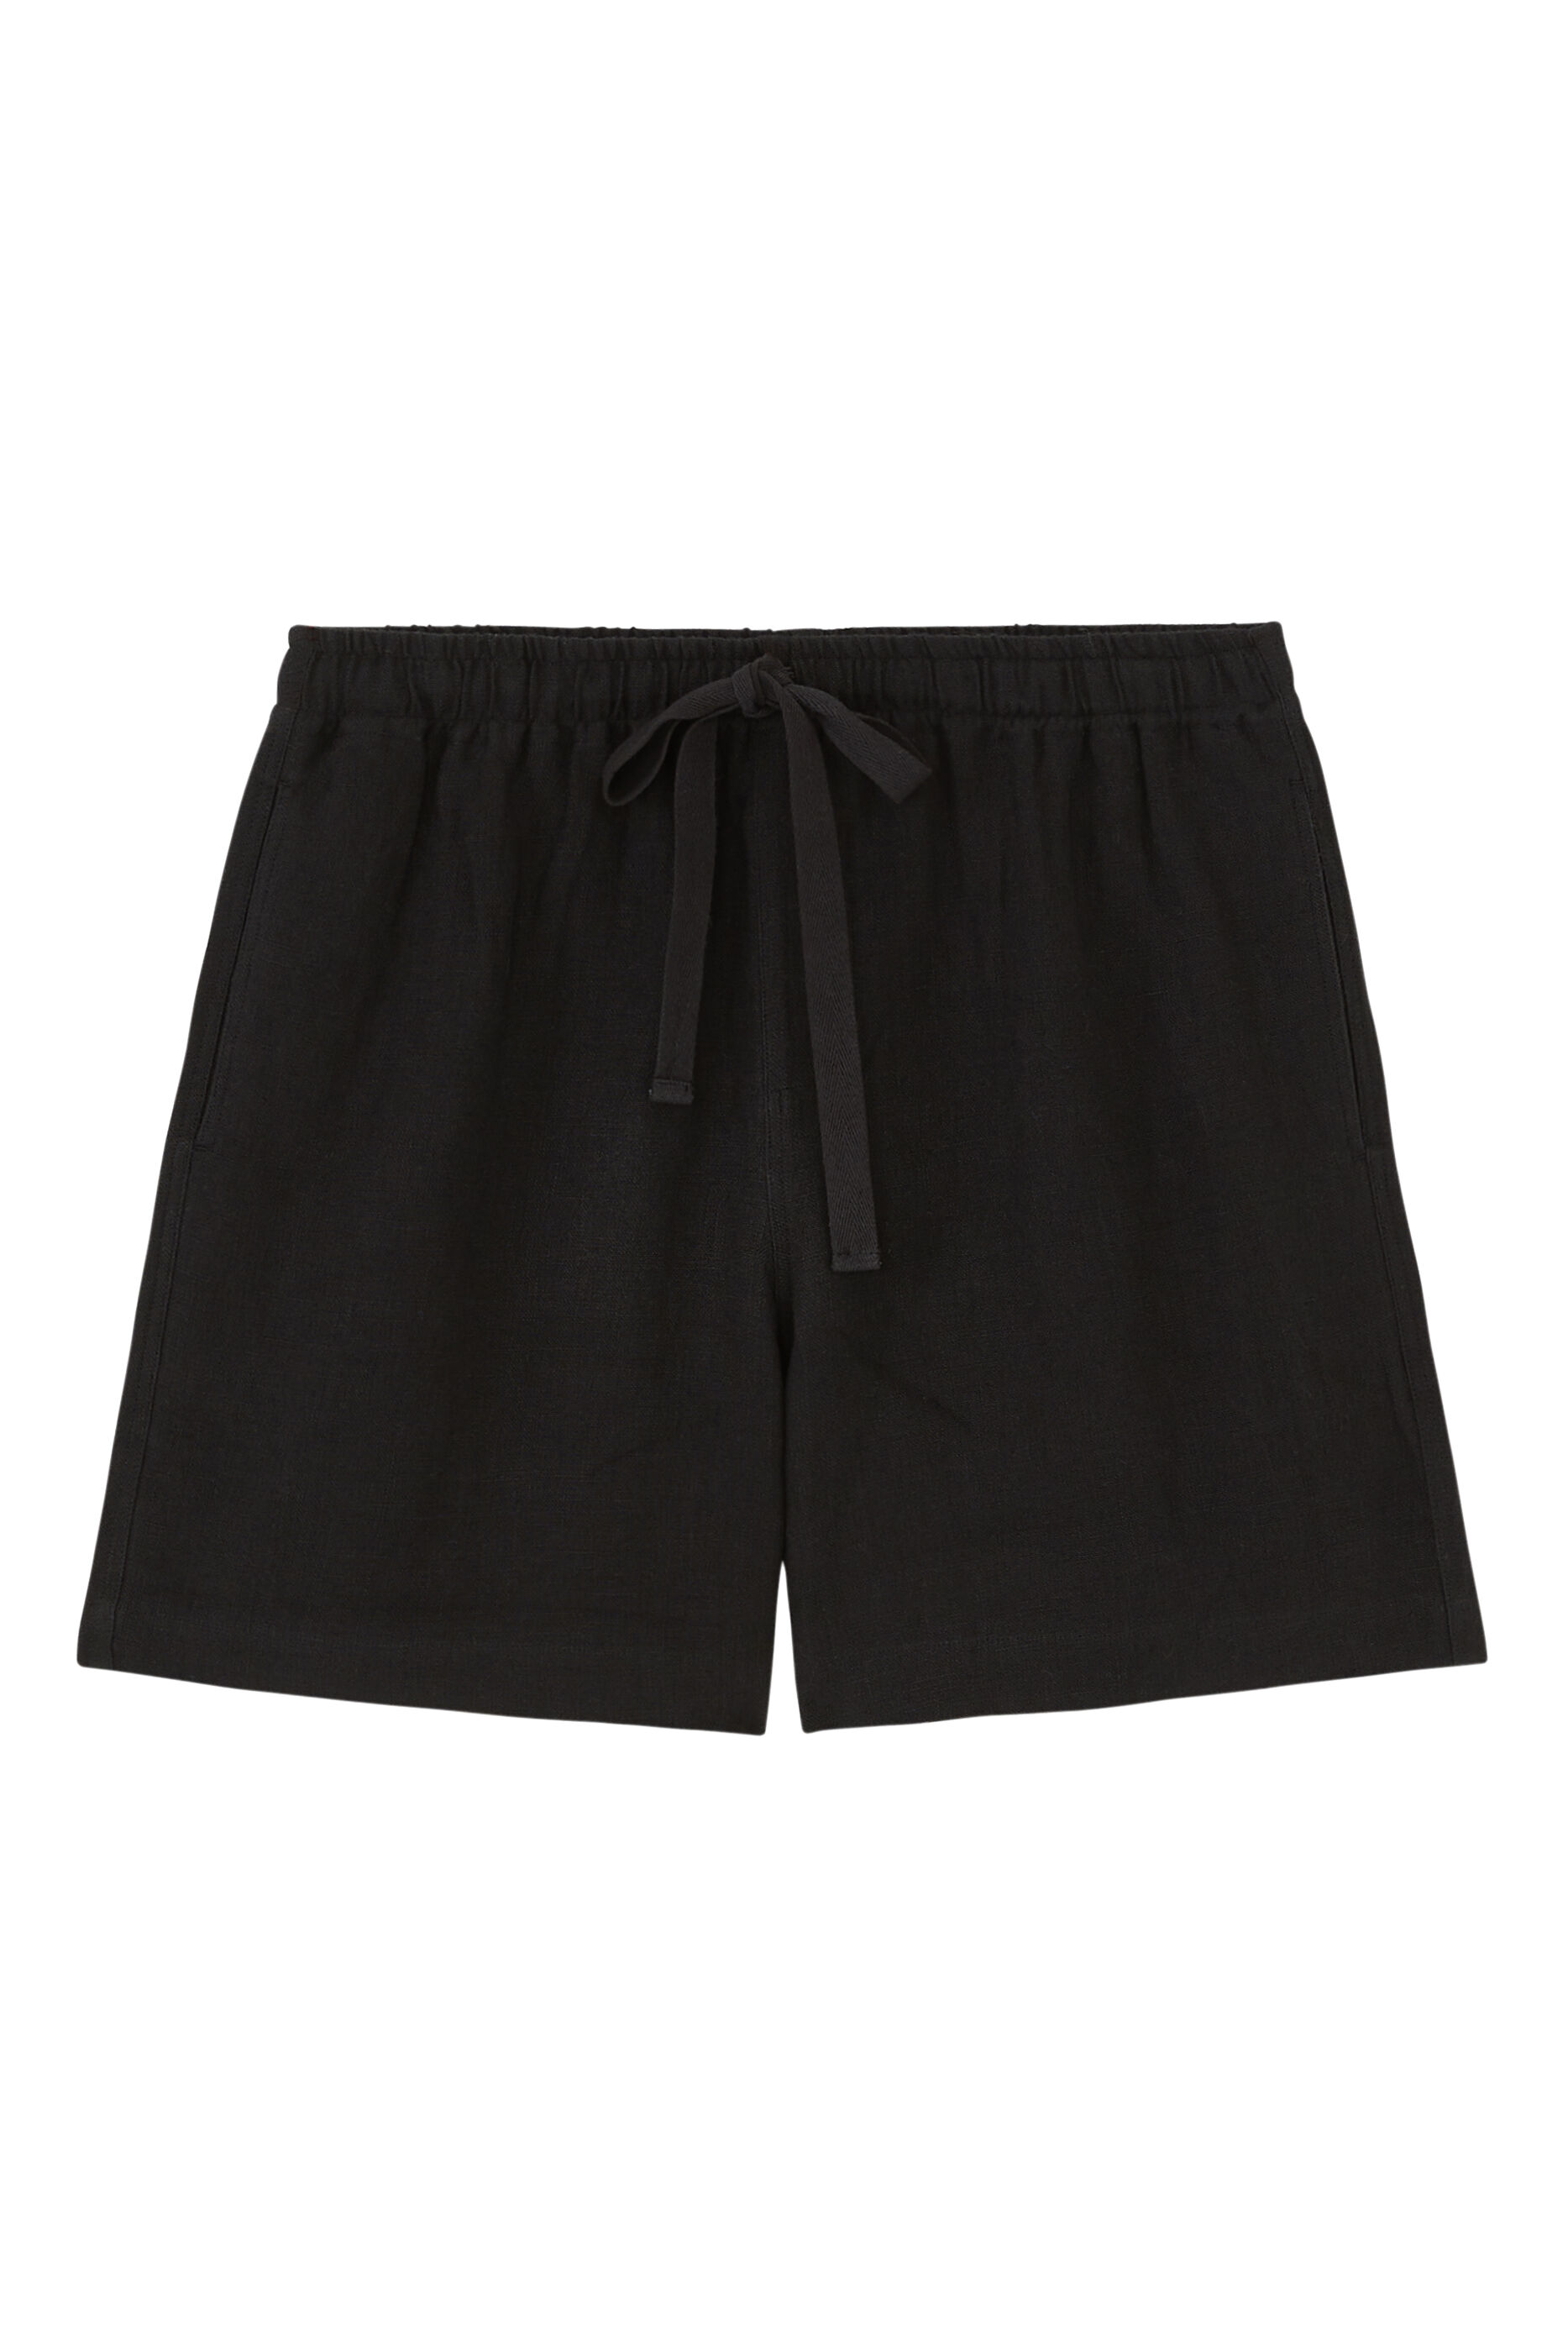 COMMAS Black Drawstring Shorts